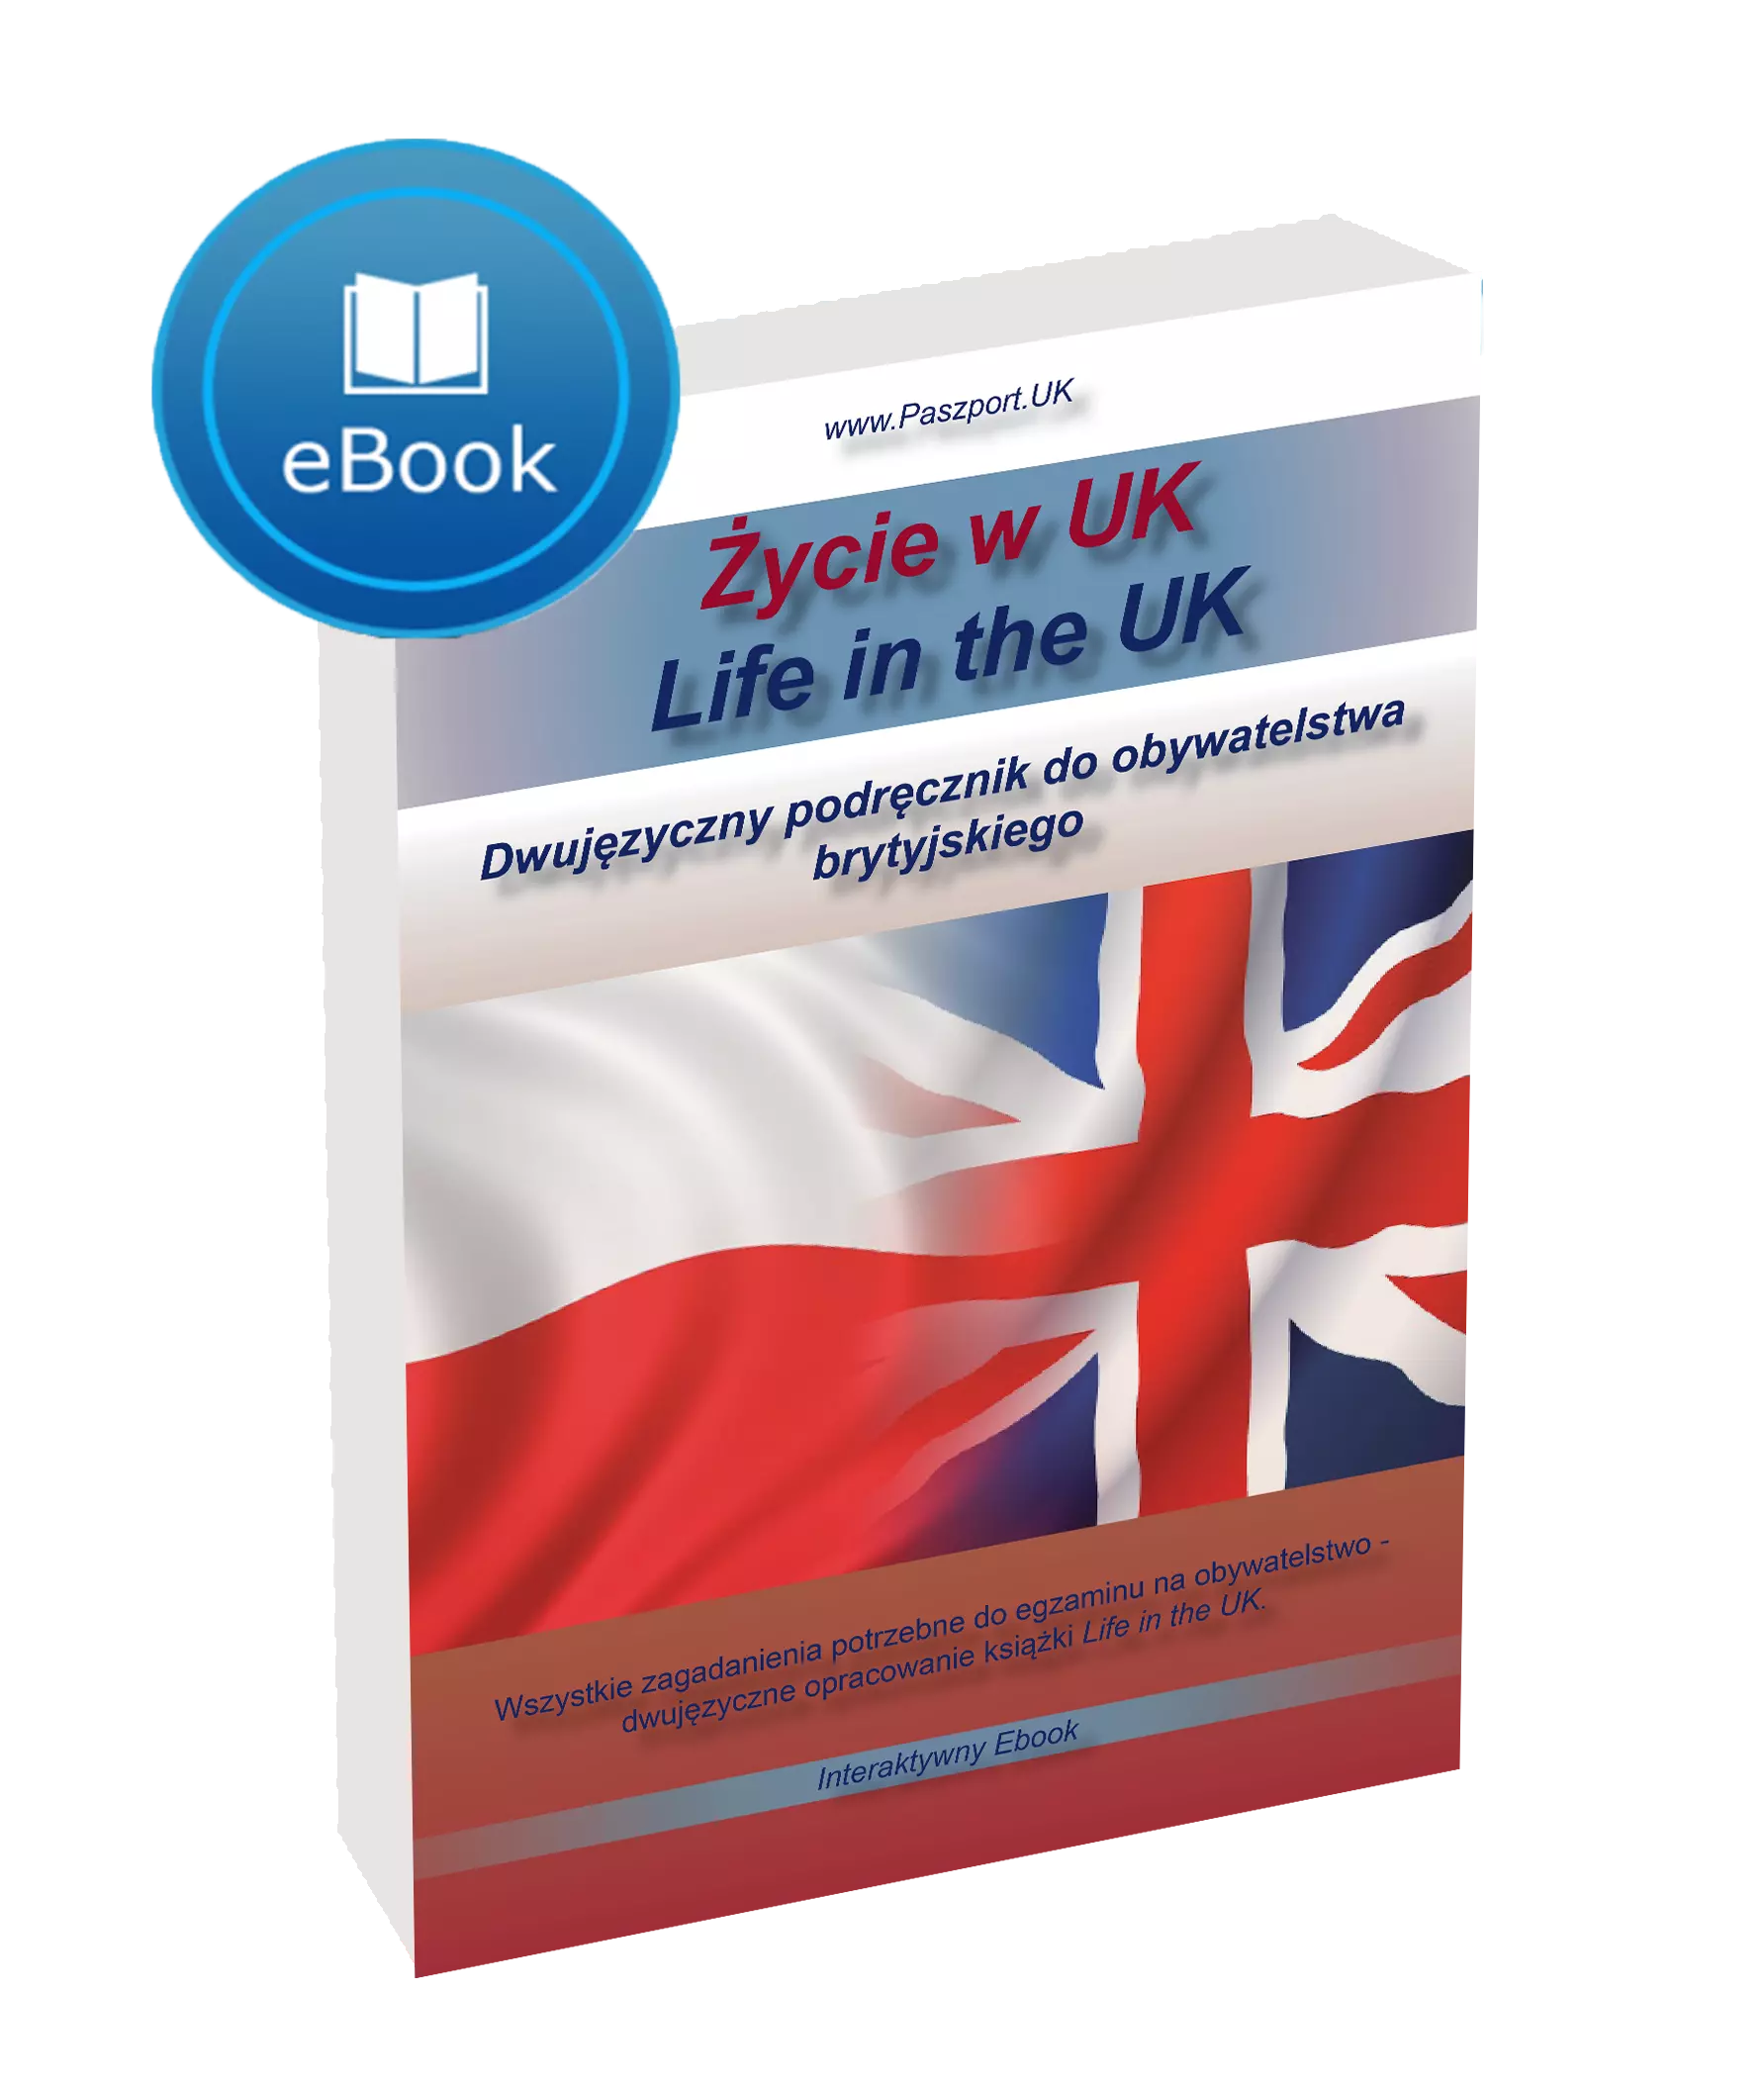 Life in the UK po polsku Zycie w UK dla Polaków w UK